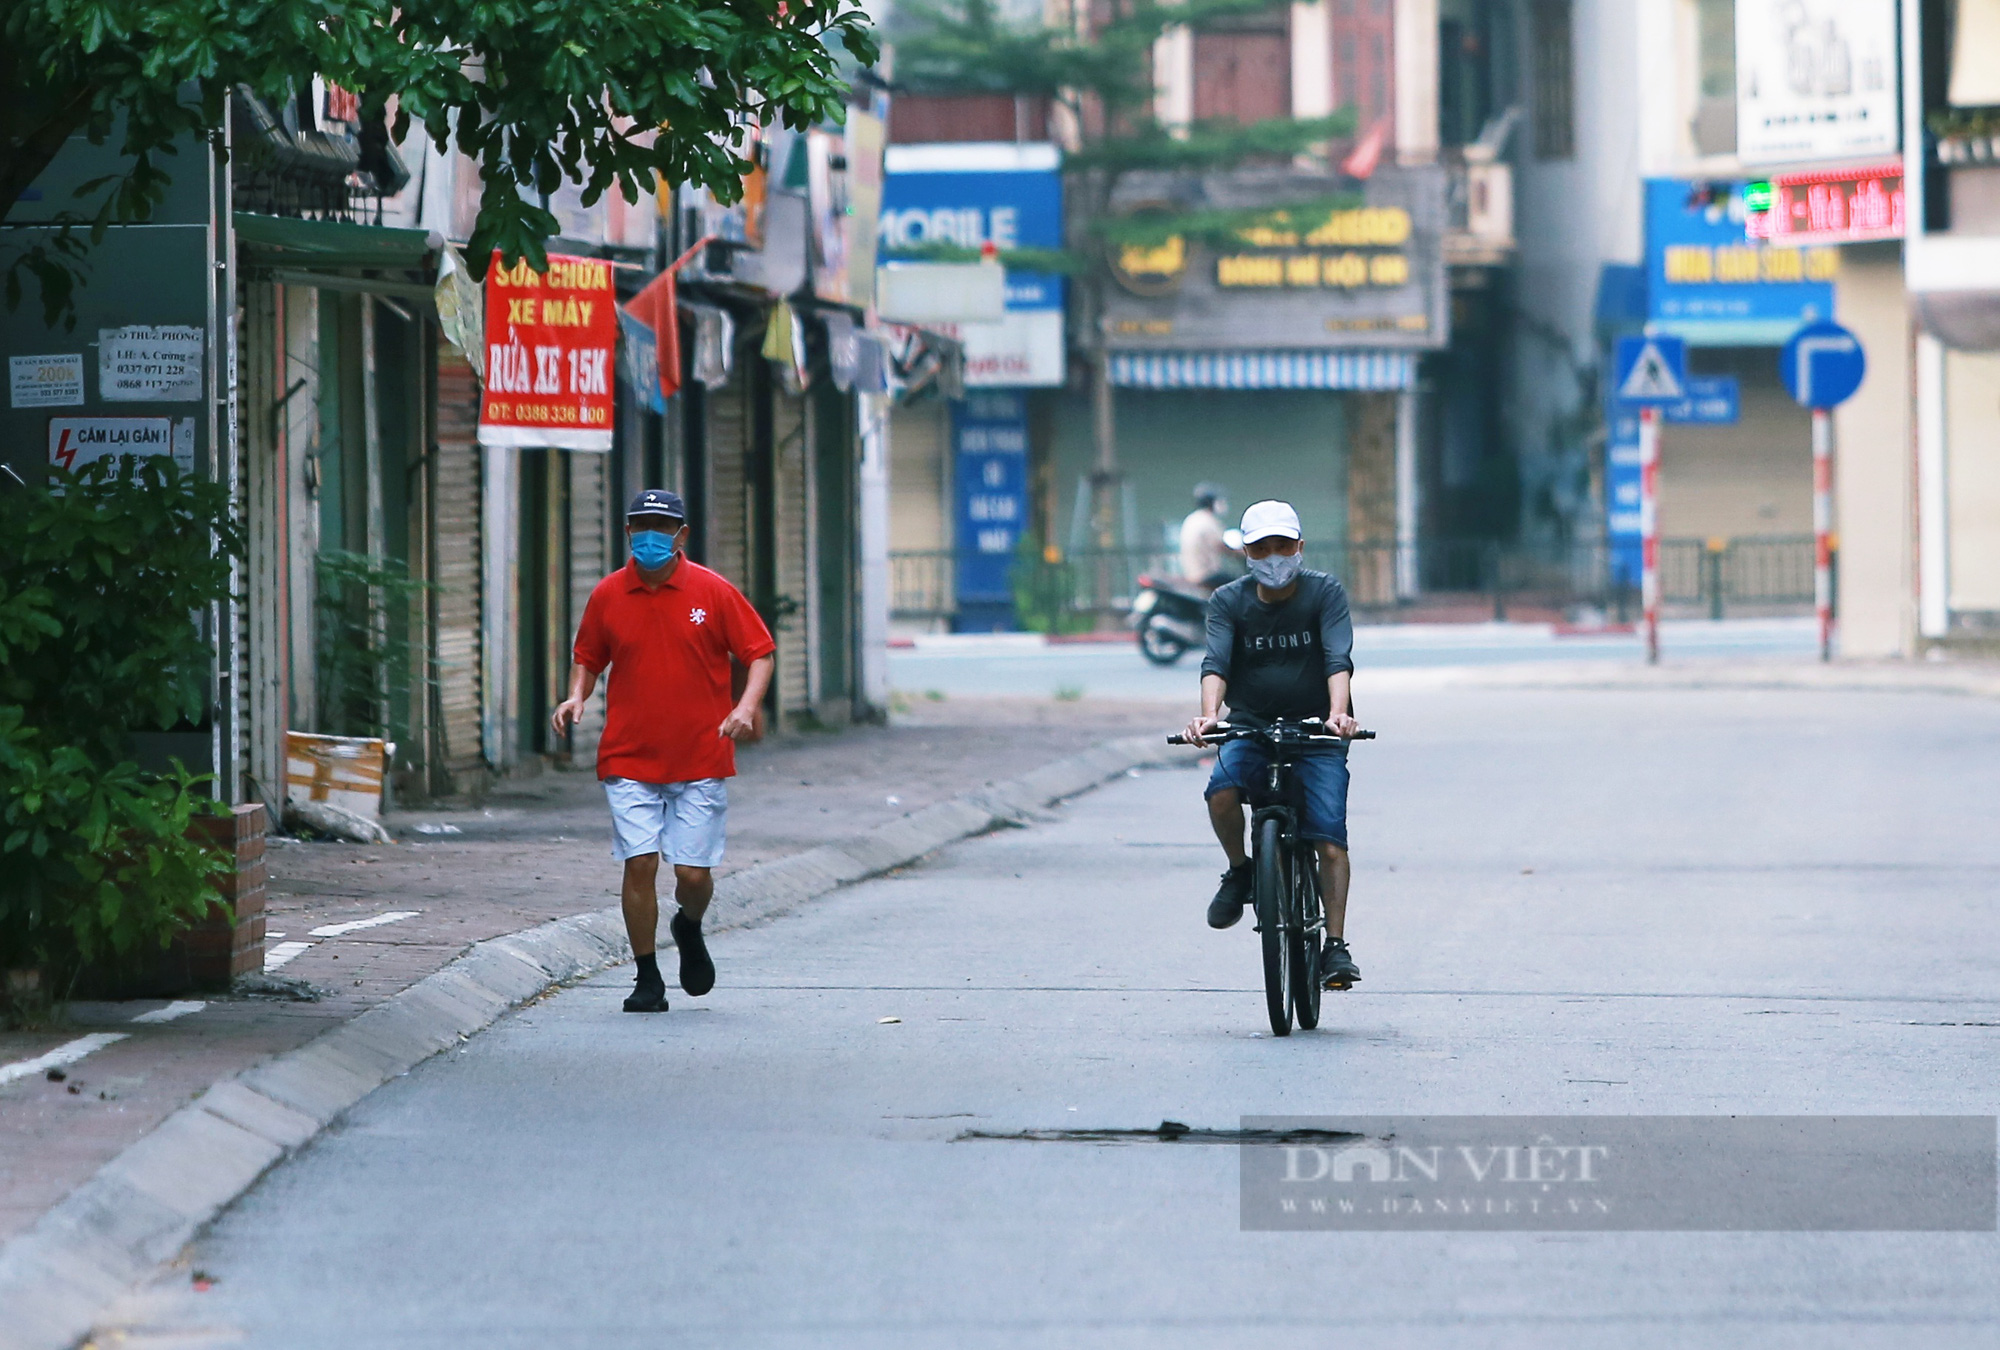 Hà Nội: Nhiều người dân vẫn lơ là chống dịch, thản nhiên luyện tập thể dục ngoài đường phố - Ảnh 4.